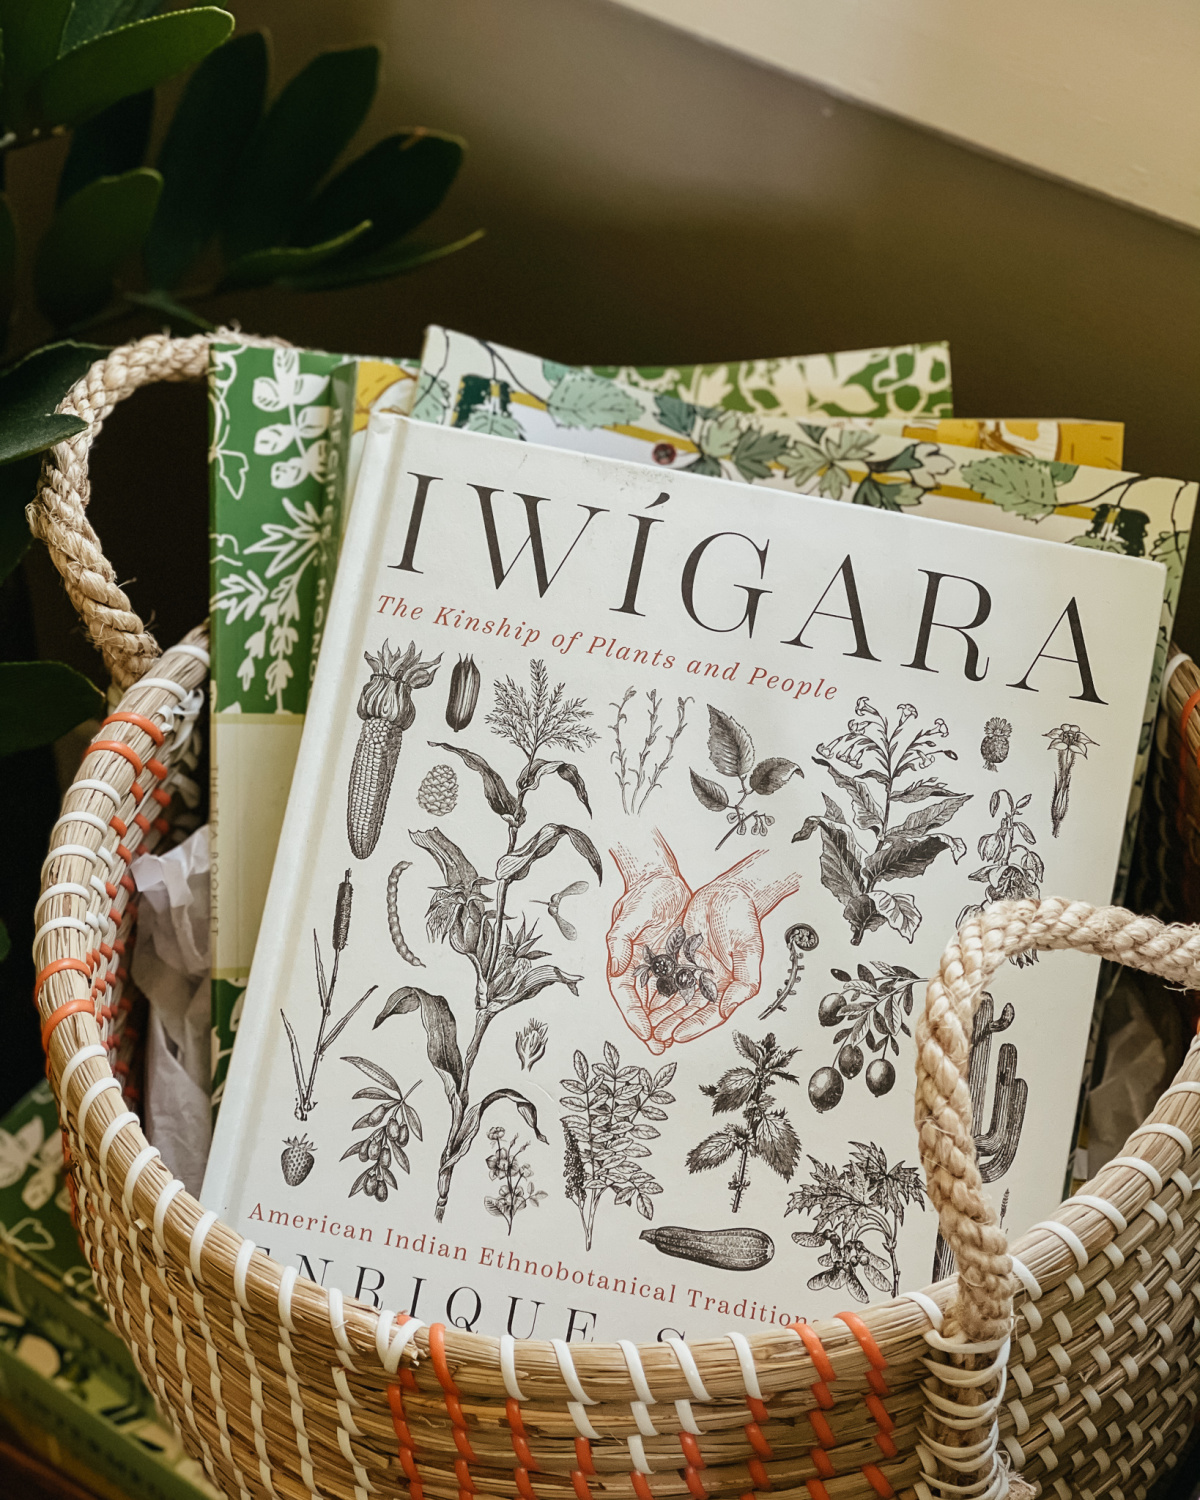 Iwigara book in a basket 